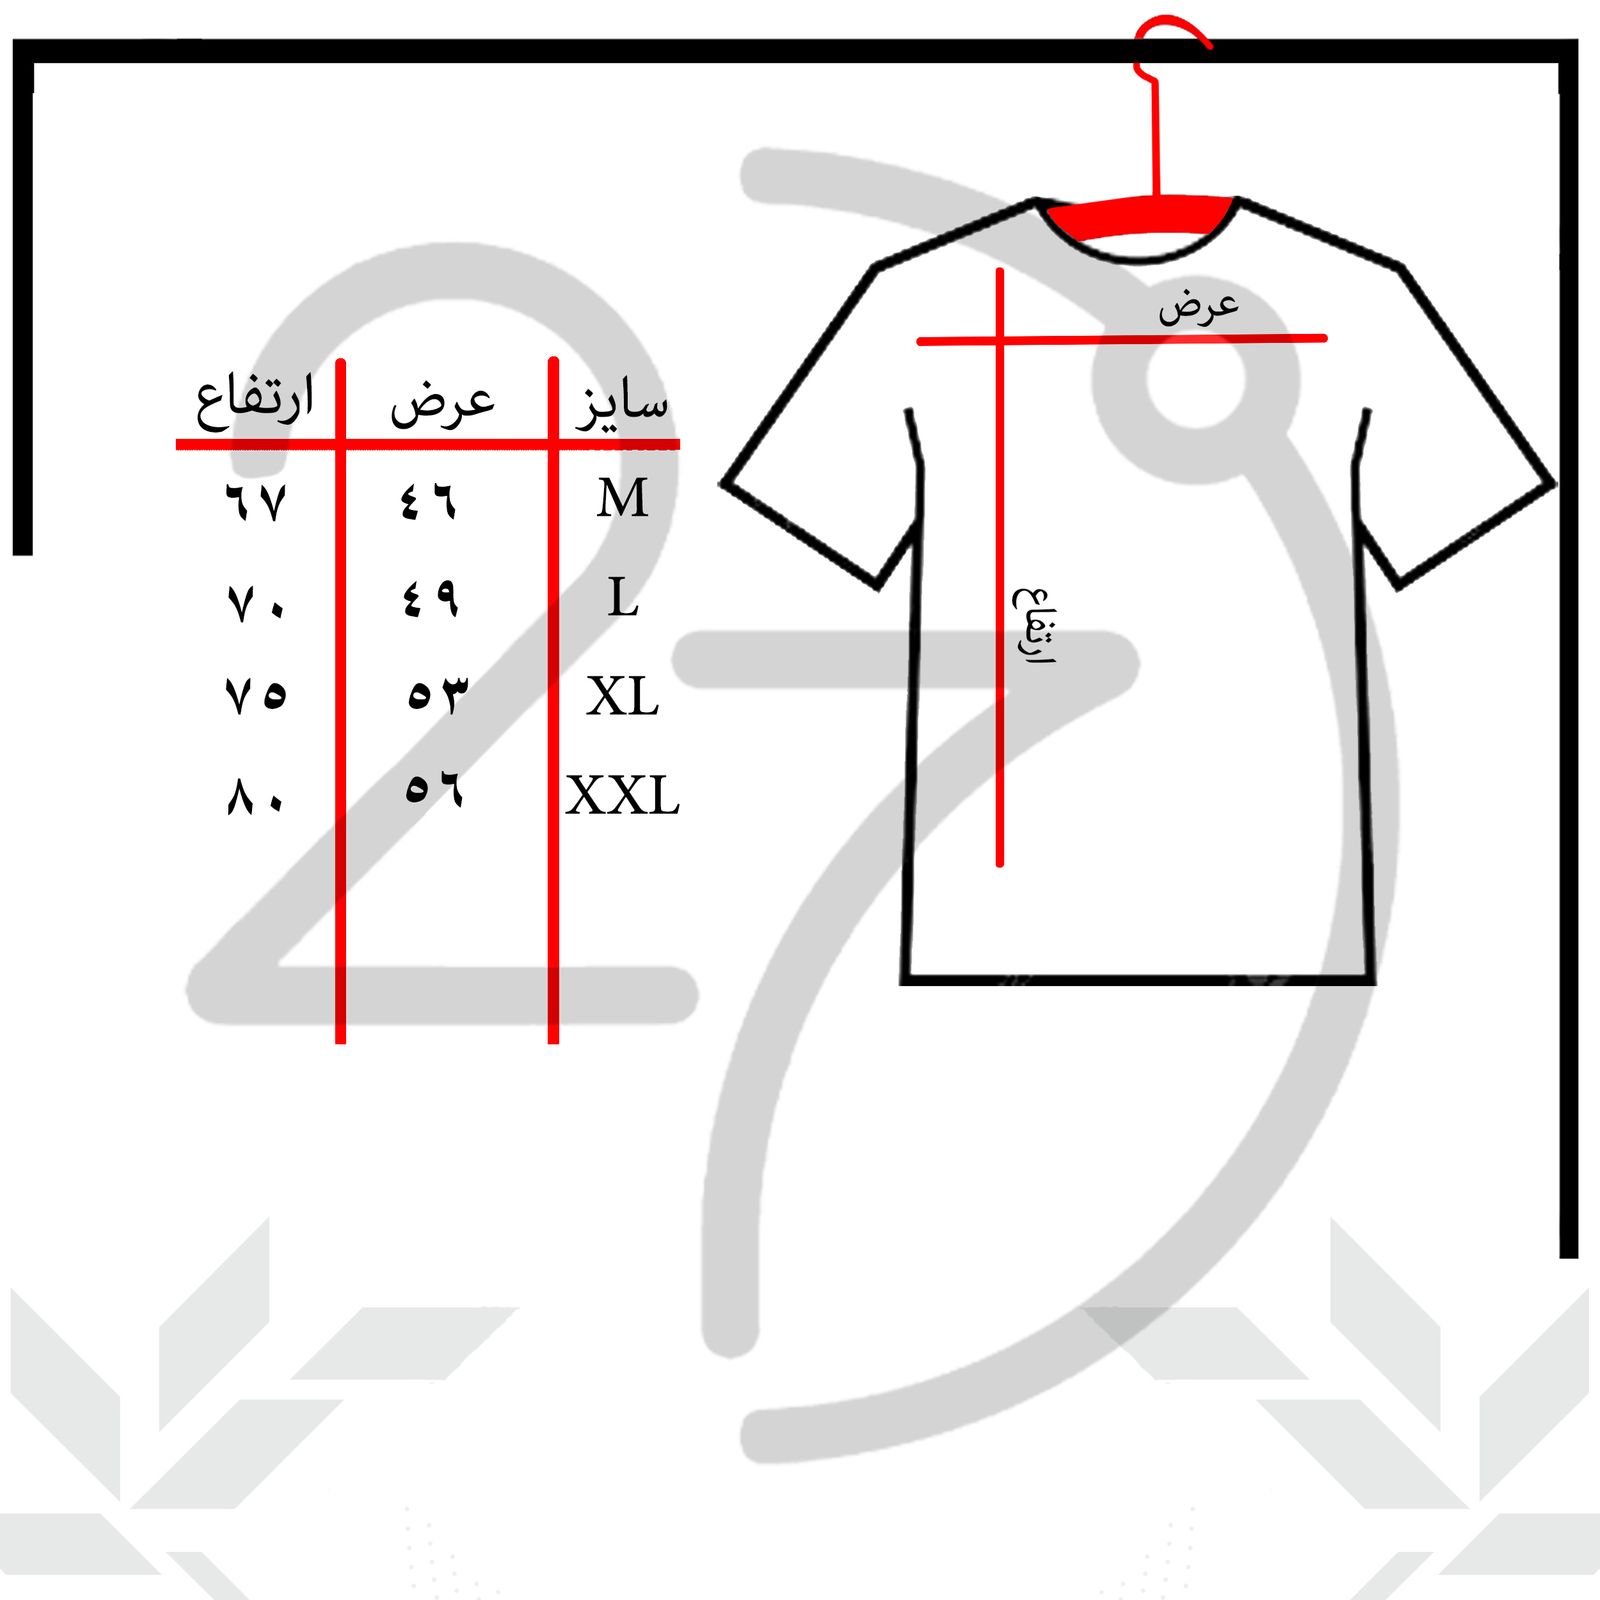 تی شرت آستین کوتاه مردانه 27 مدل Death note کد KV302 رنگ مشکی -  - 3